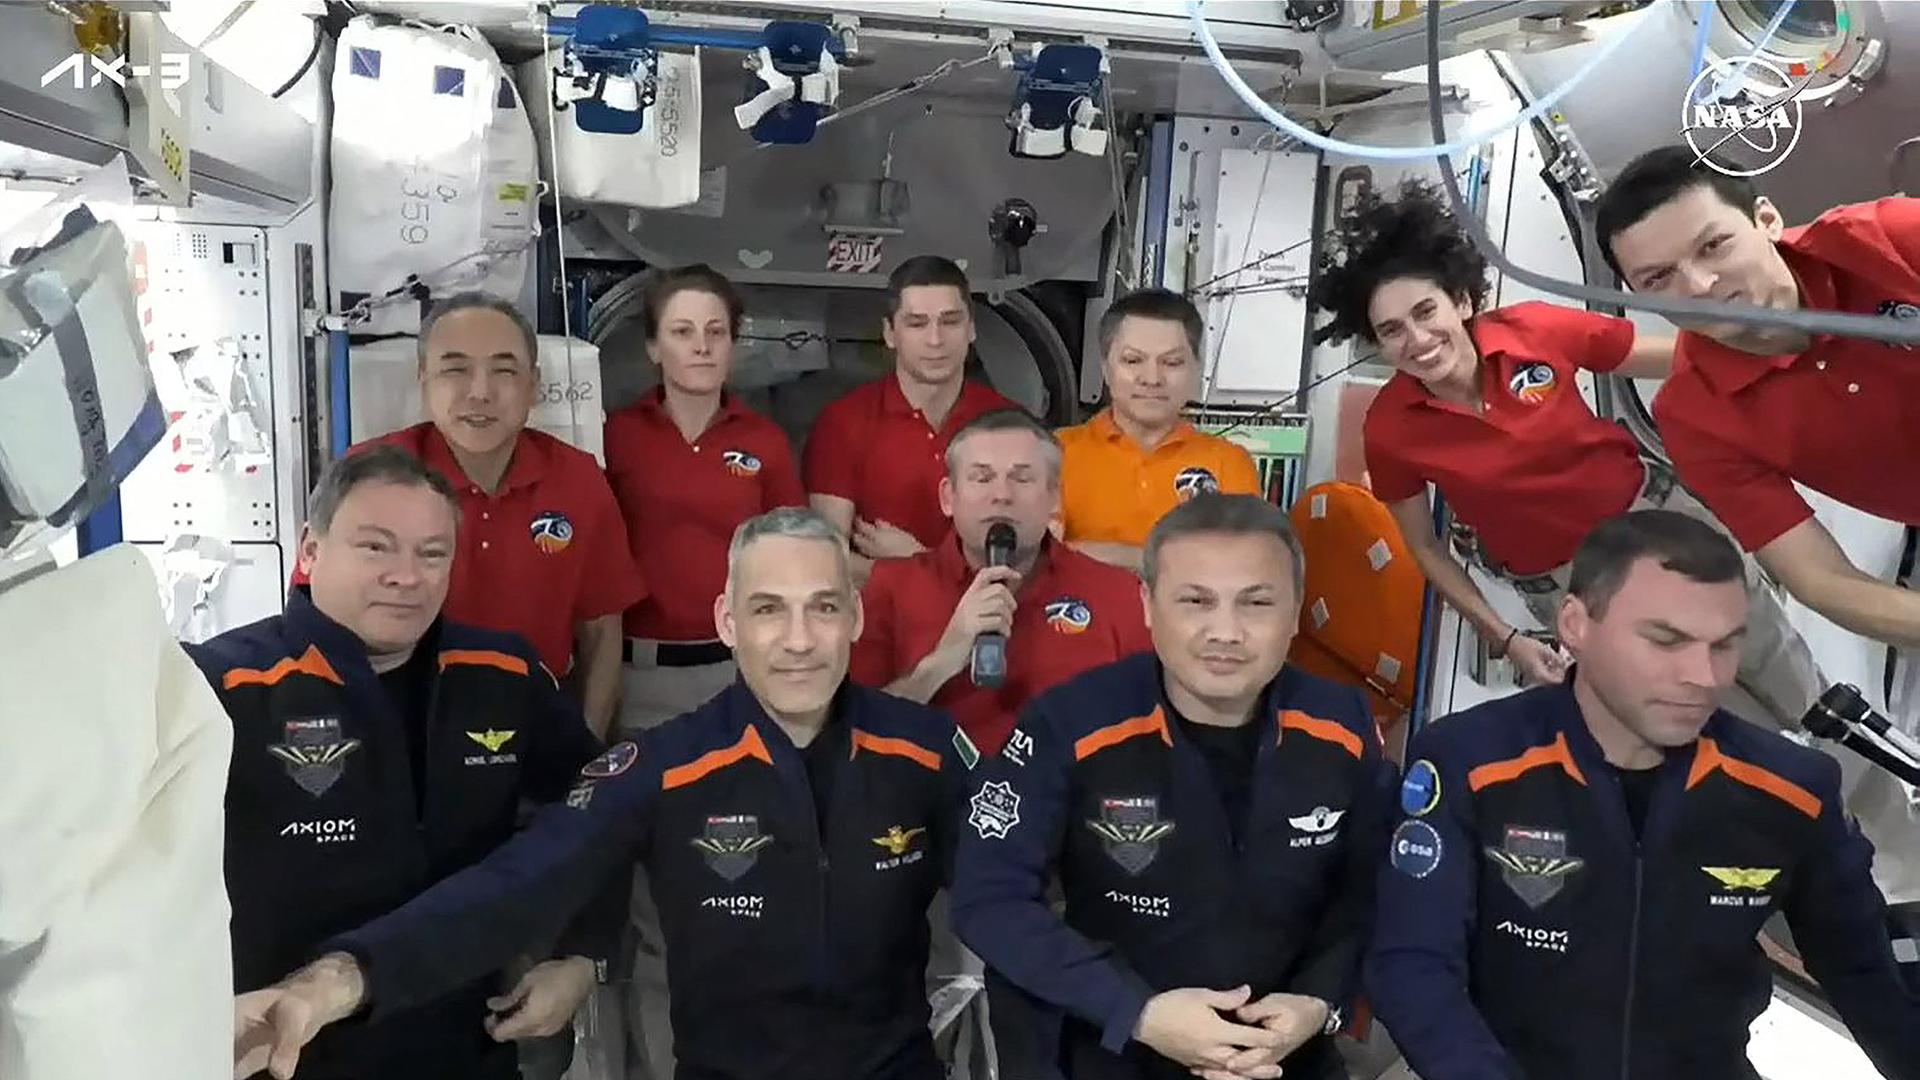 Die Mitglieder der Axion Mission 3 (v.l.n.r., vorne): Michael López-Alegría aus Spanien, Walter Villadei aus Italien, Alper Gezeravci aus der Türkei, Marcus Wandt aus Schweden bei ihrer Ankunft zusammen mit der ISS-Crew.